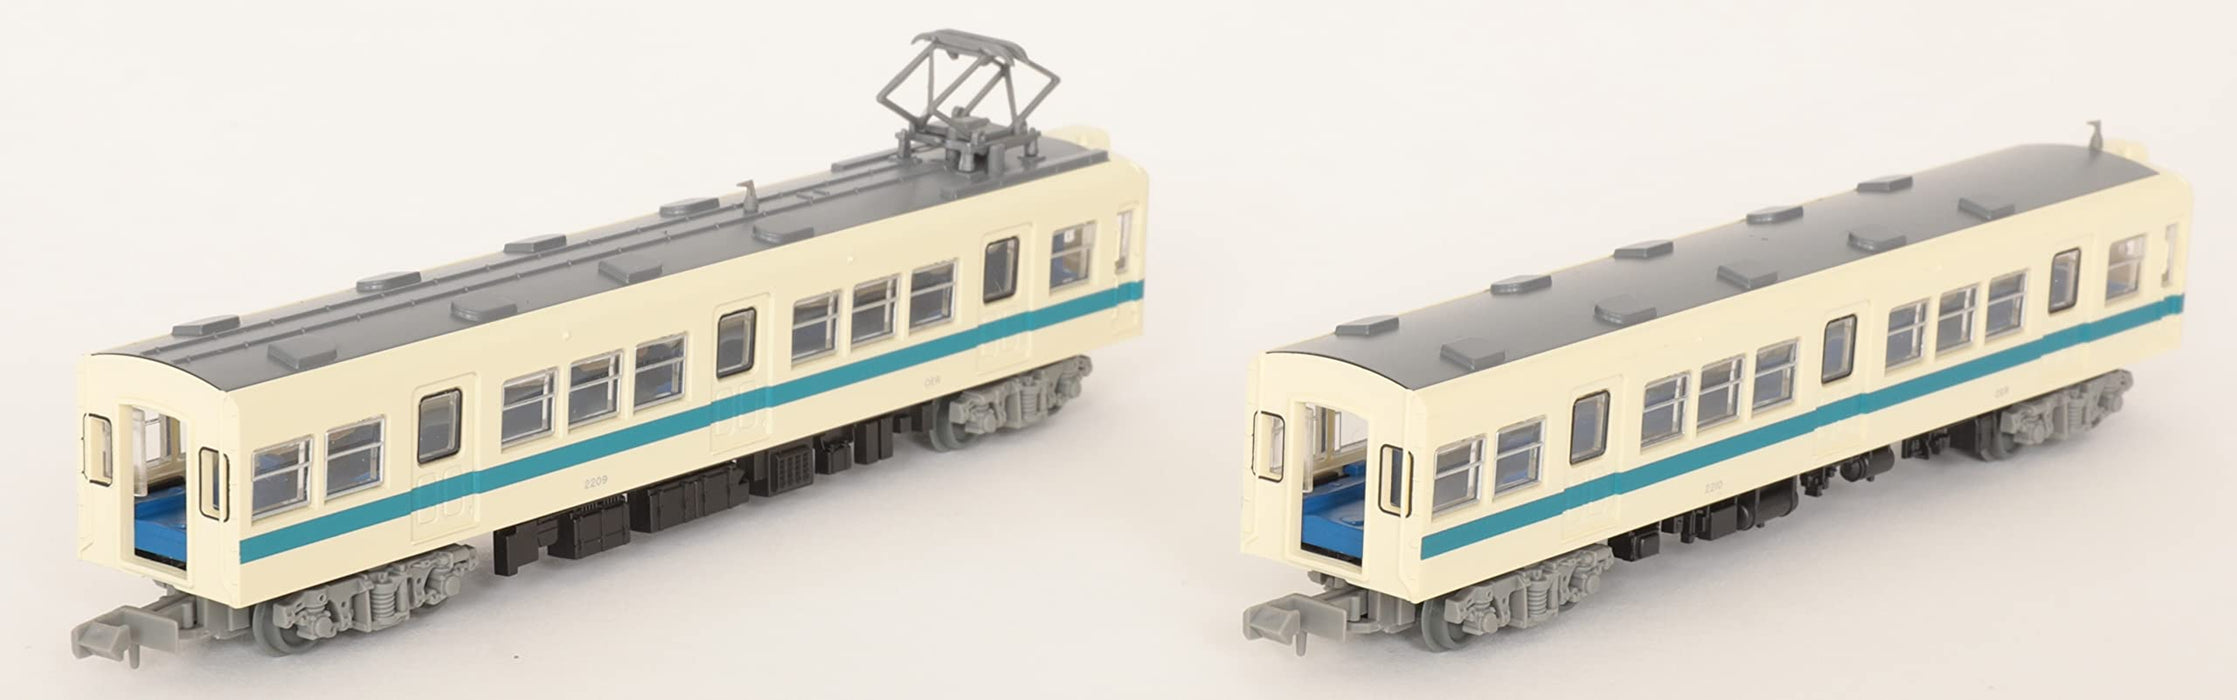 Tomytec Railway Collection – Odakyu Electric Railway Typ 2200, 2-Wagen-Set, A, limitierte Auflage, 316350